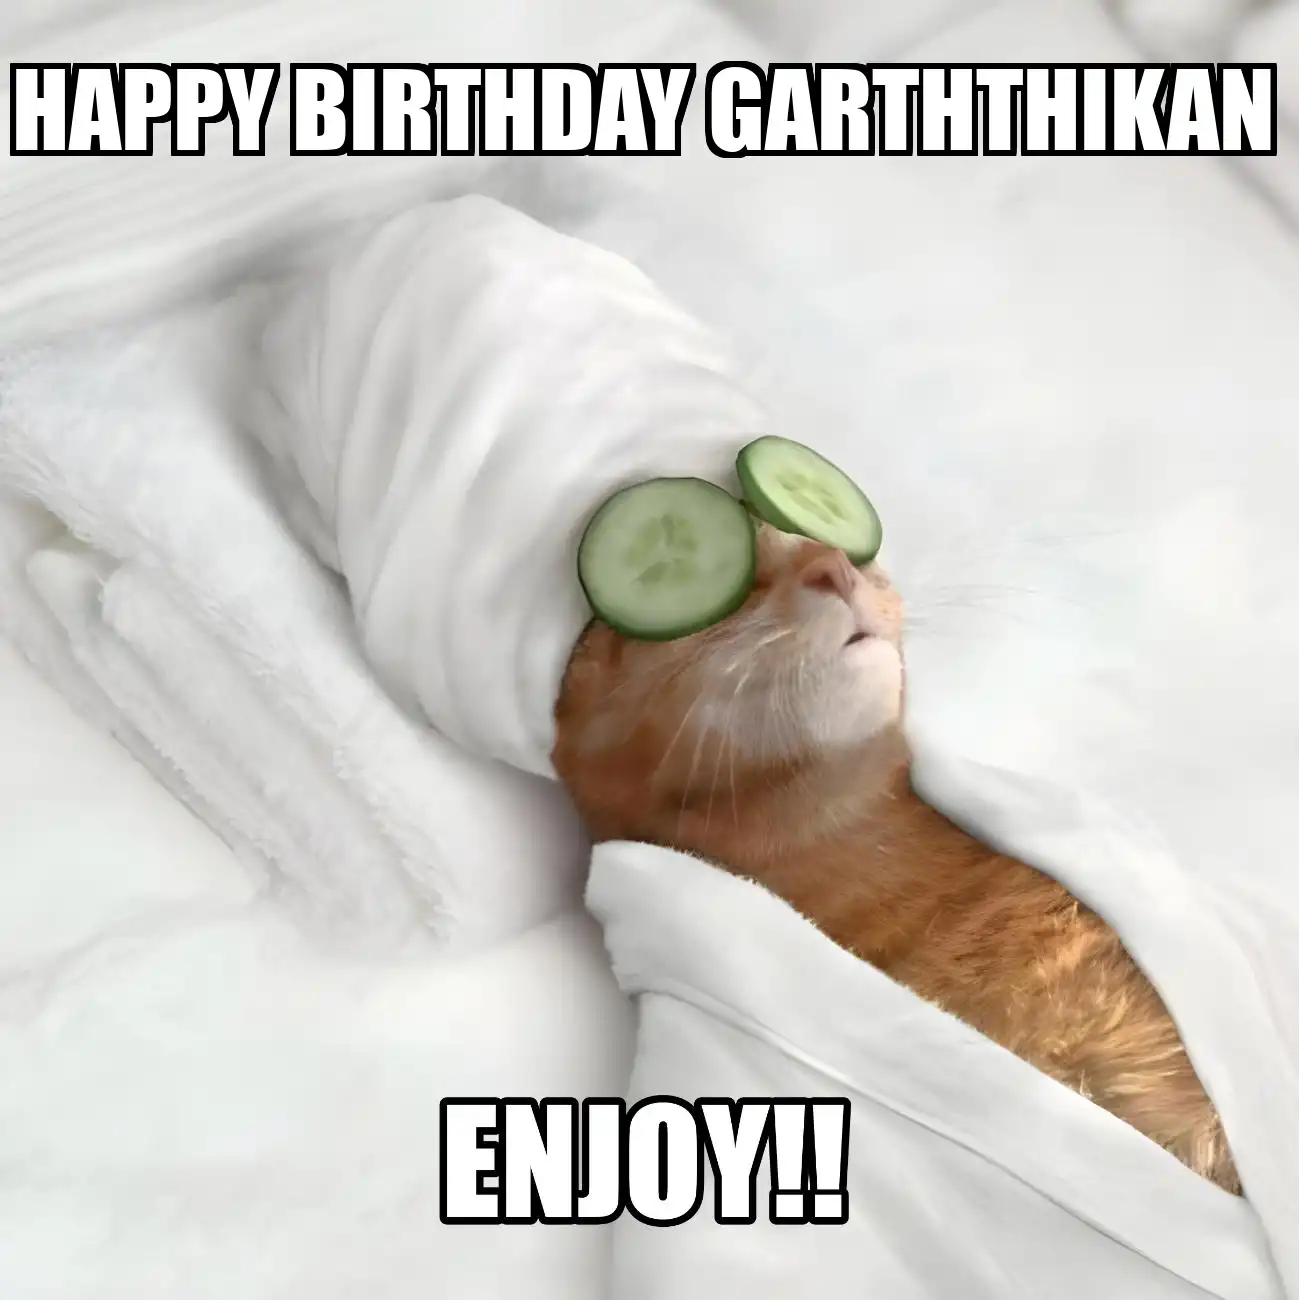 Happy Birthday Garththikan Enjoy Cat Meme